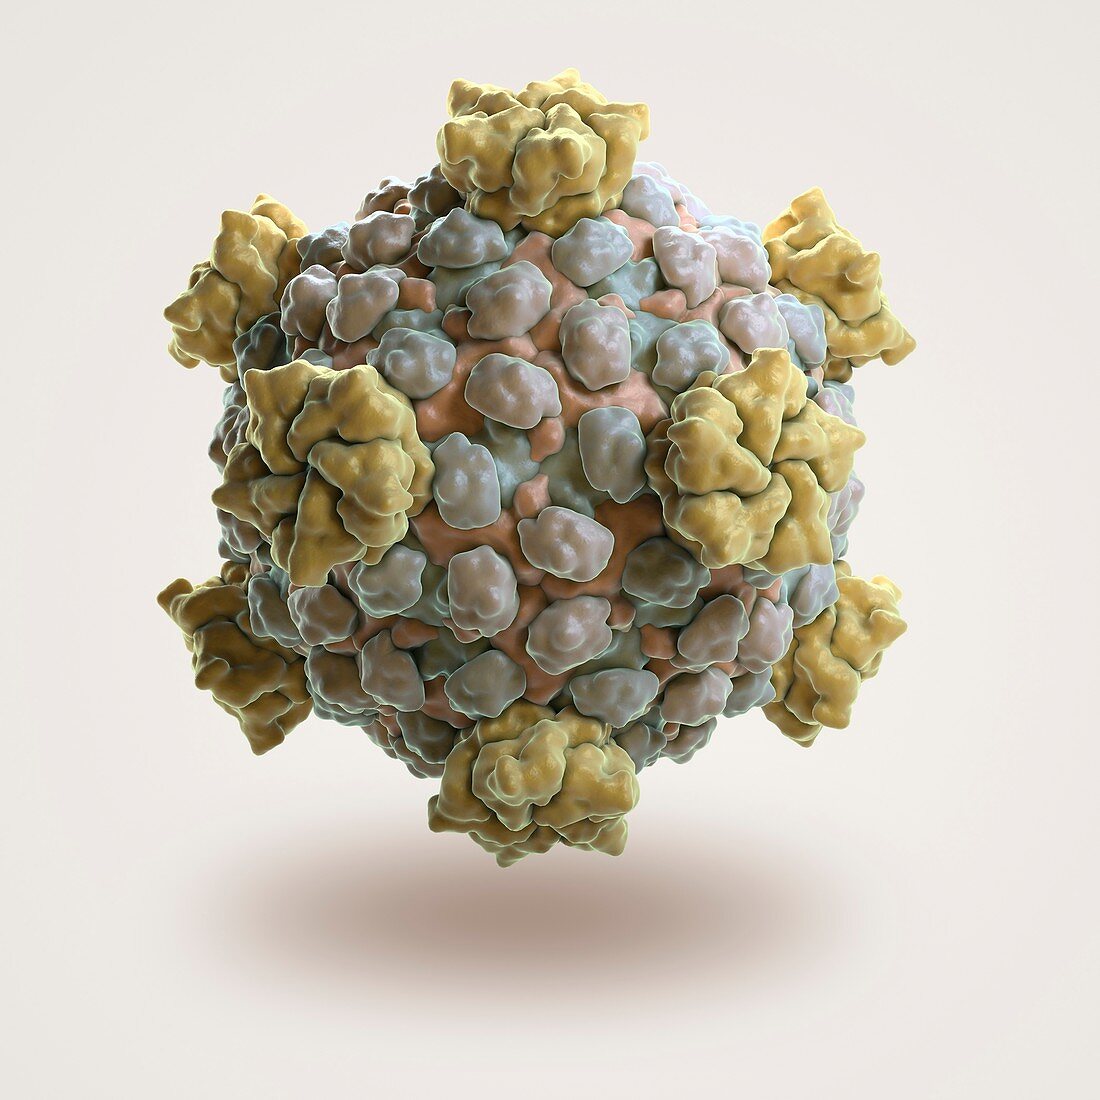 Reovirus Core, artwork